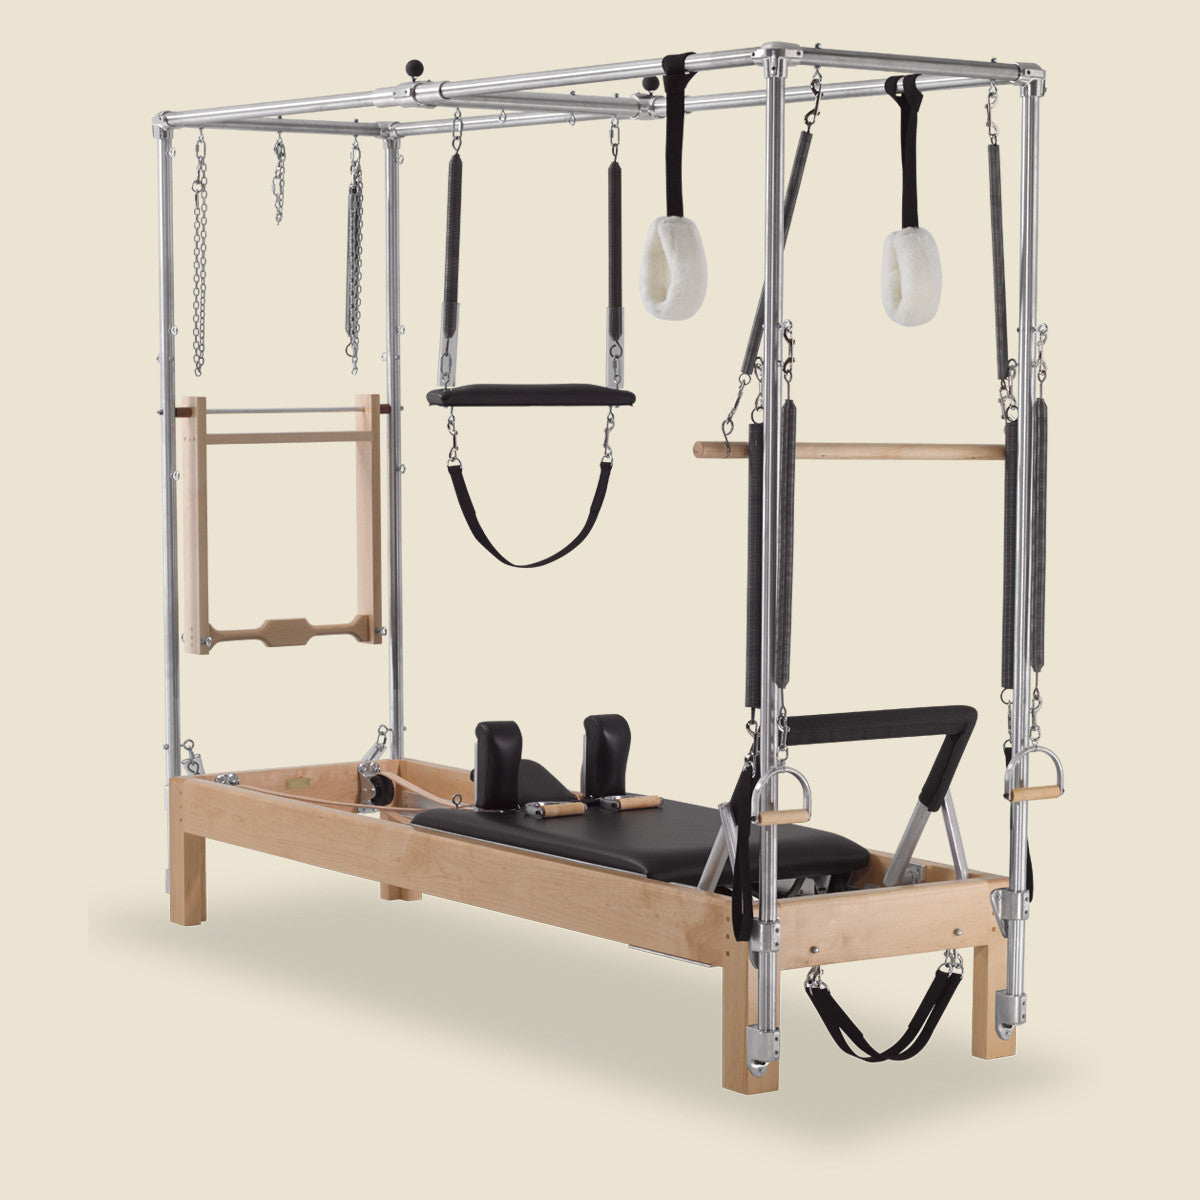 Buy AeroPilates Pilates Box & Pole Set with Free Shipping